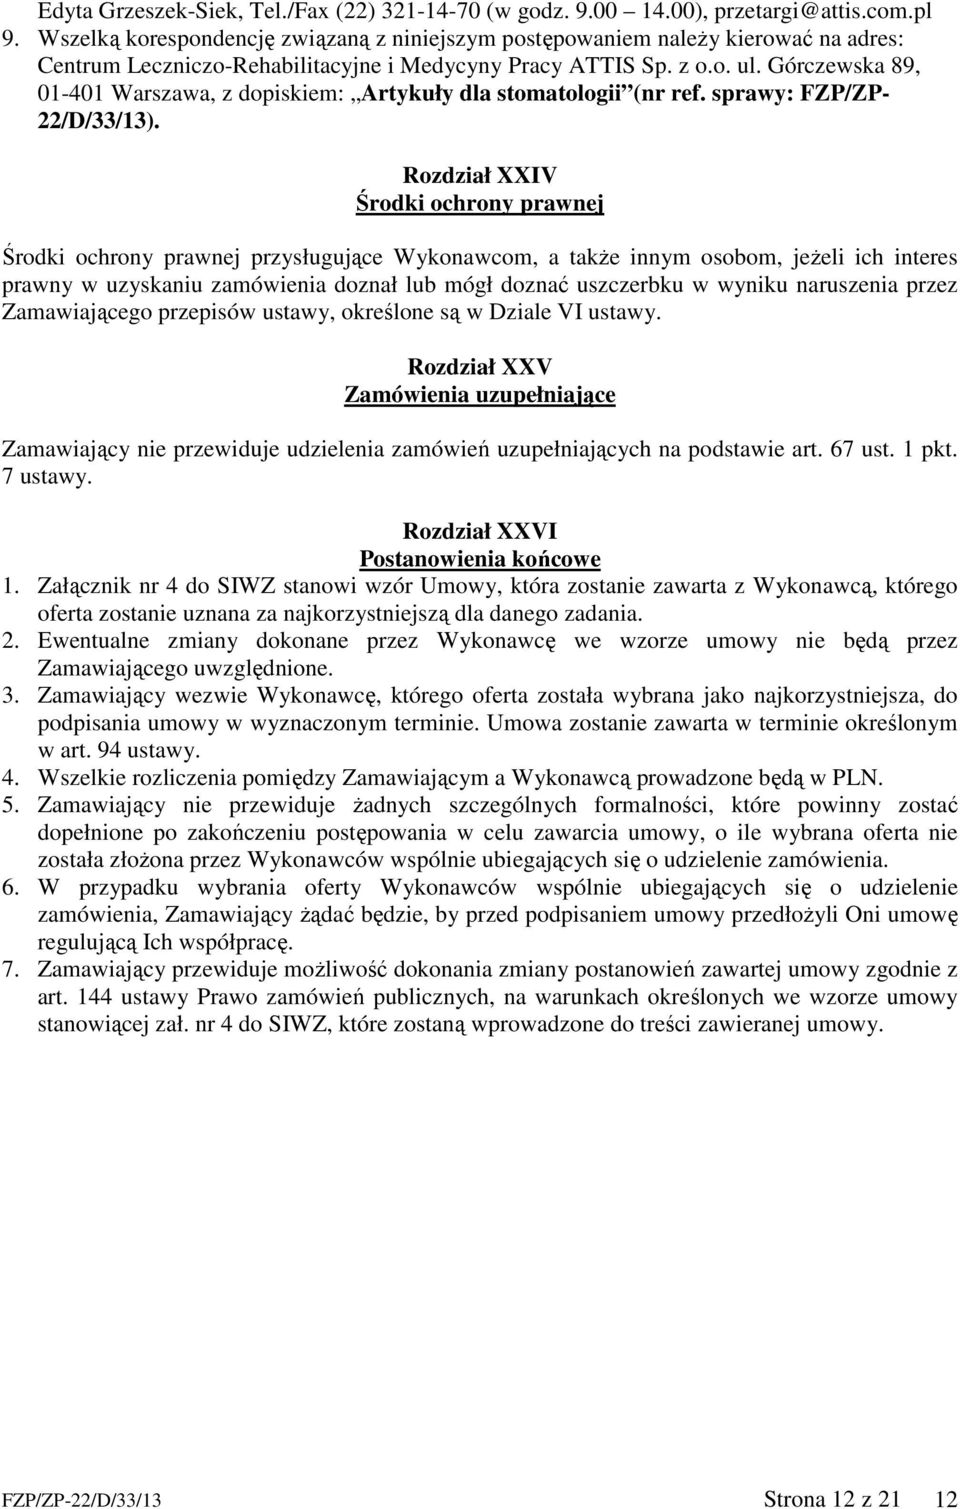 Górczewska 89, 01-401 Warszawa, z dopiskiem: Artykuły dla stomatologii (nr ref. sprawy: FZP/ZP- 22/D/33/13).